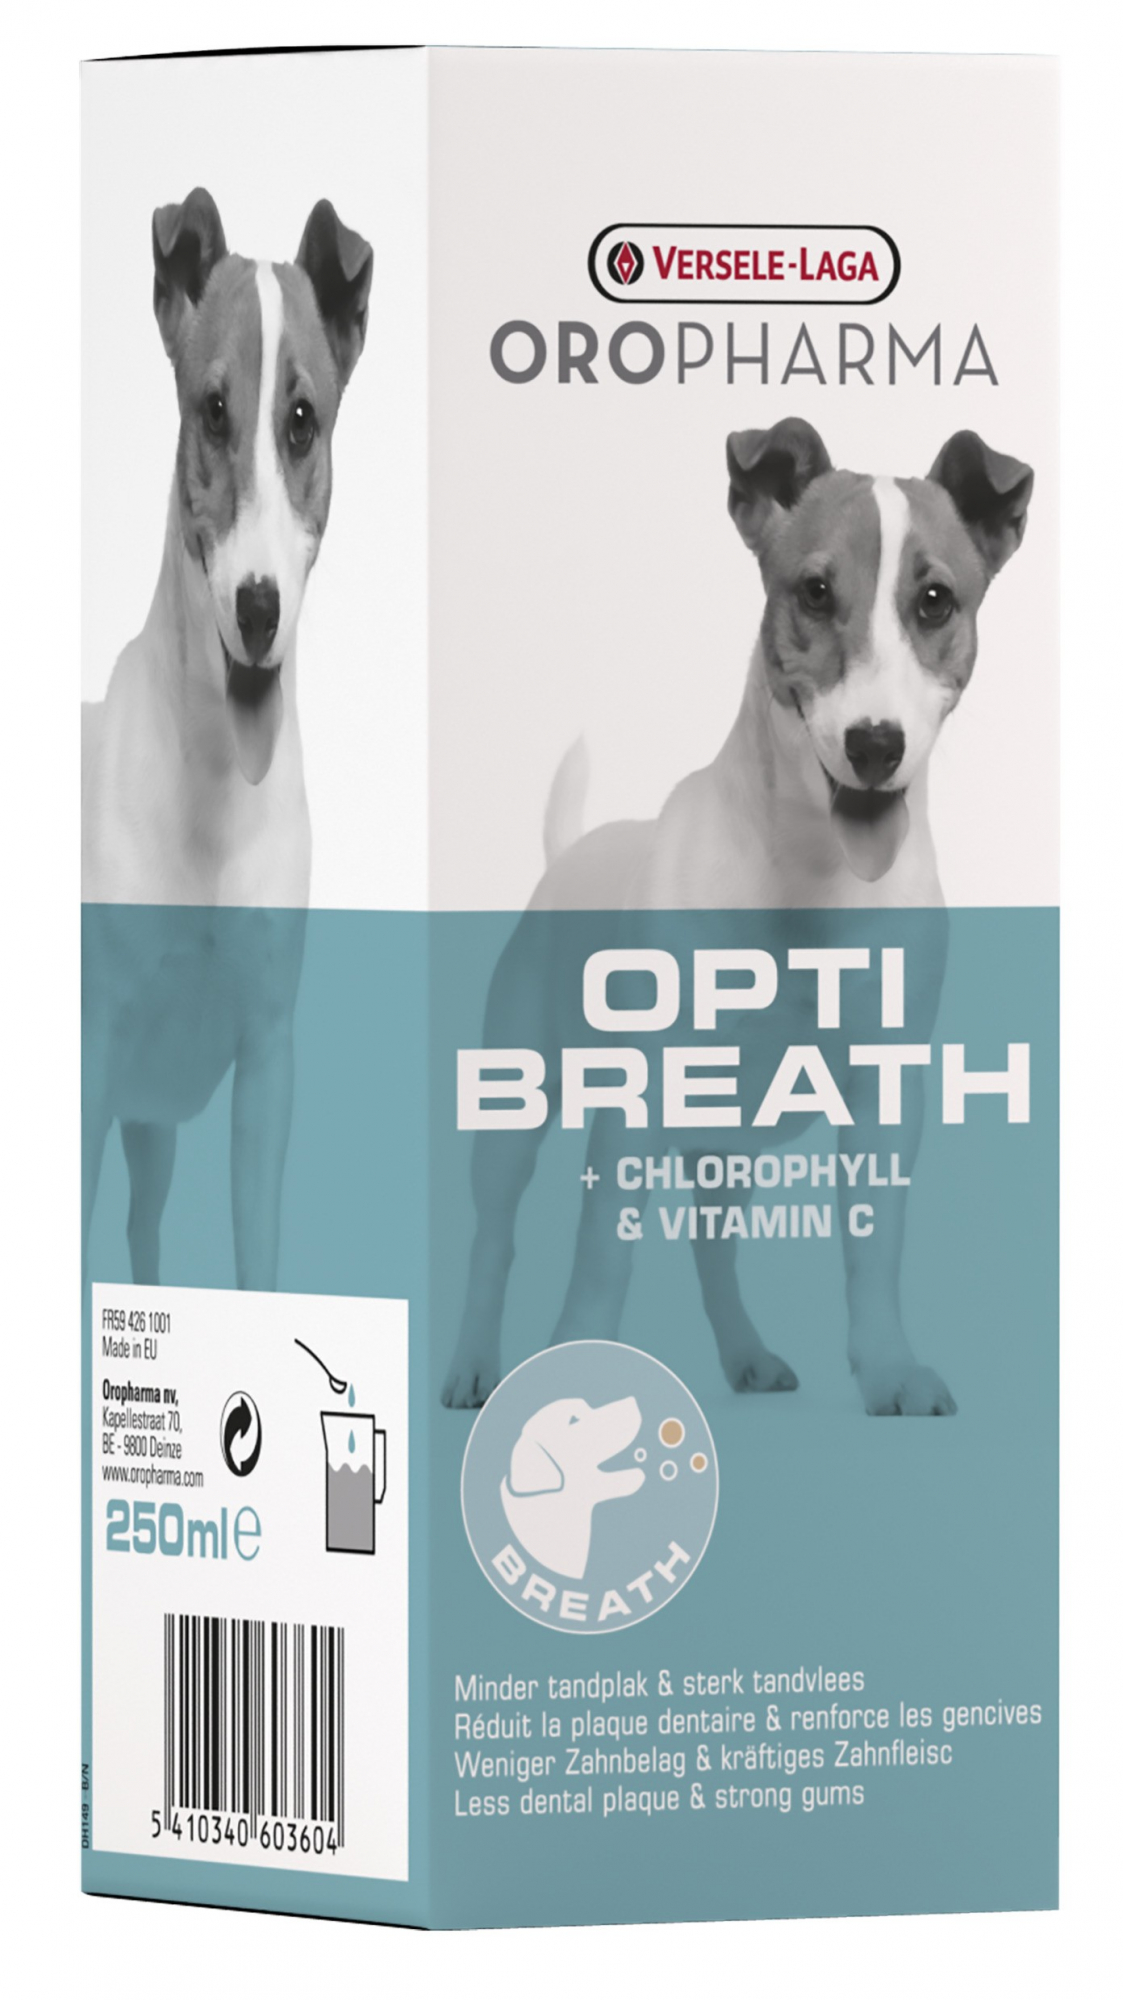 Oropharma Opti Breath - haleine agréable